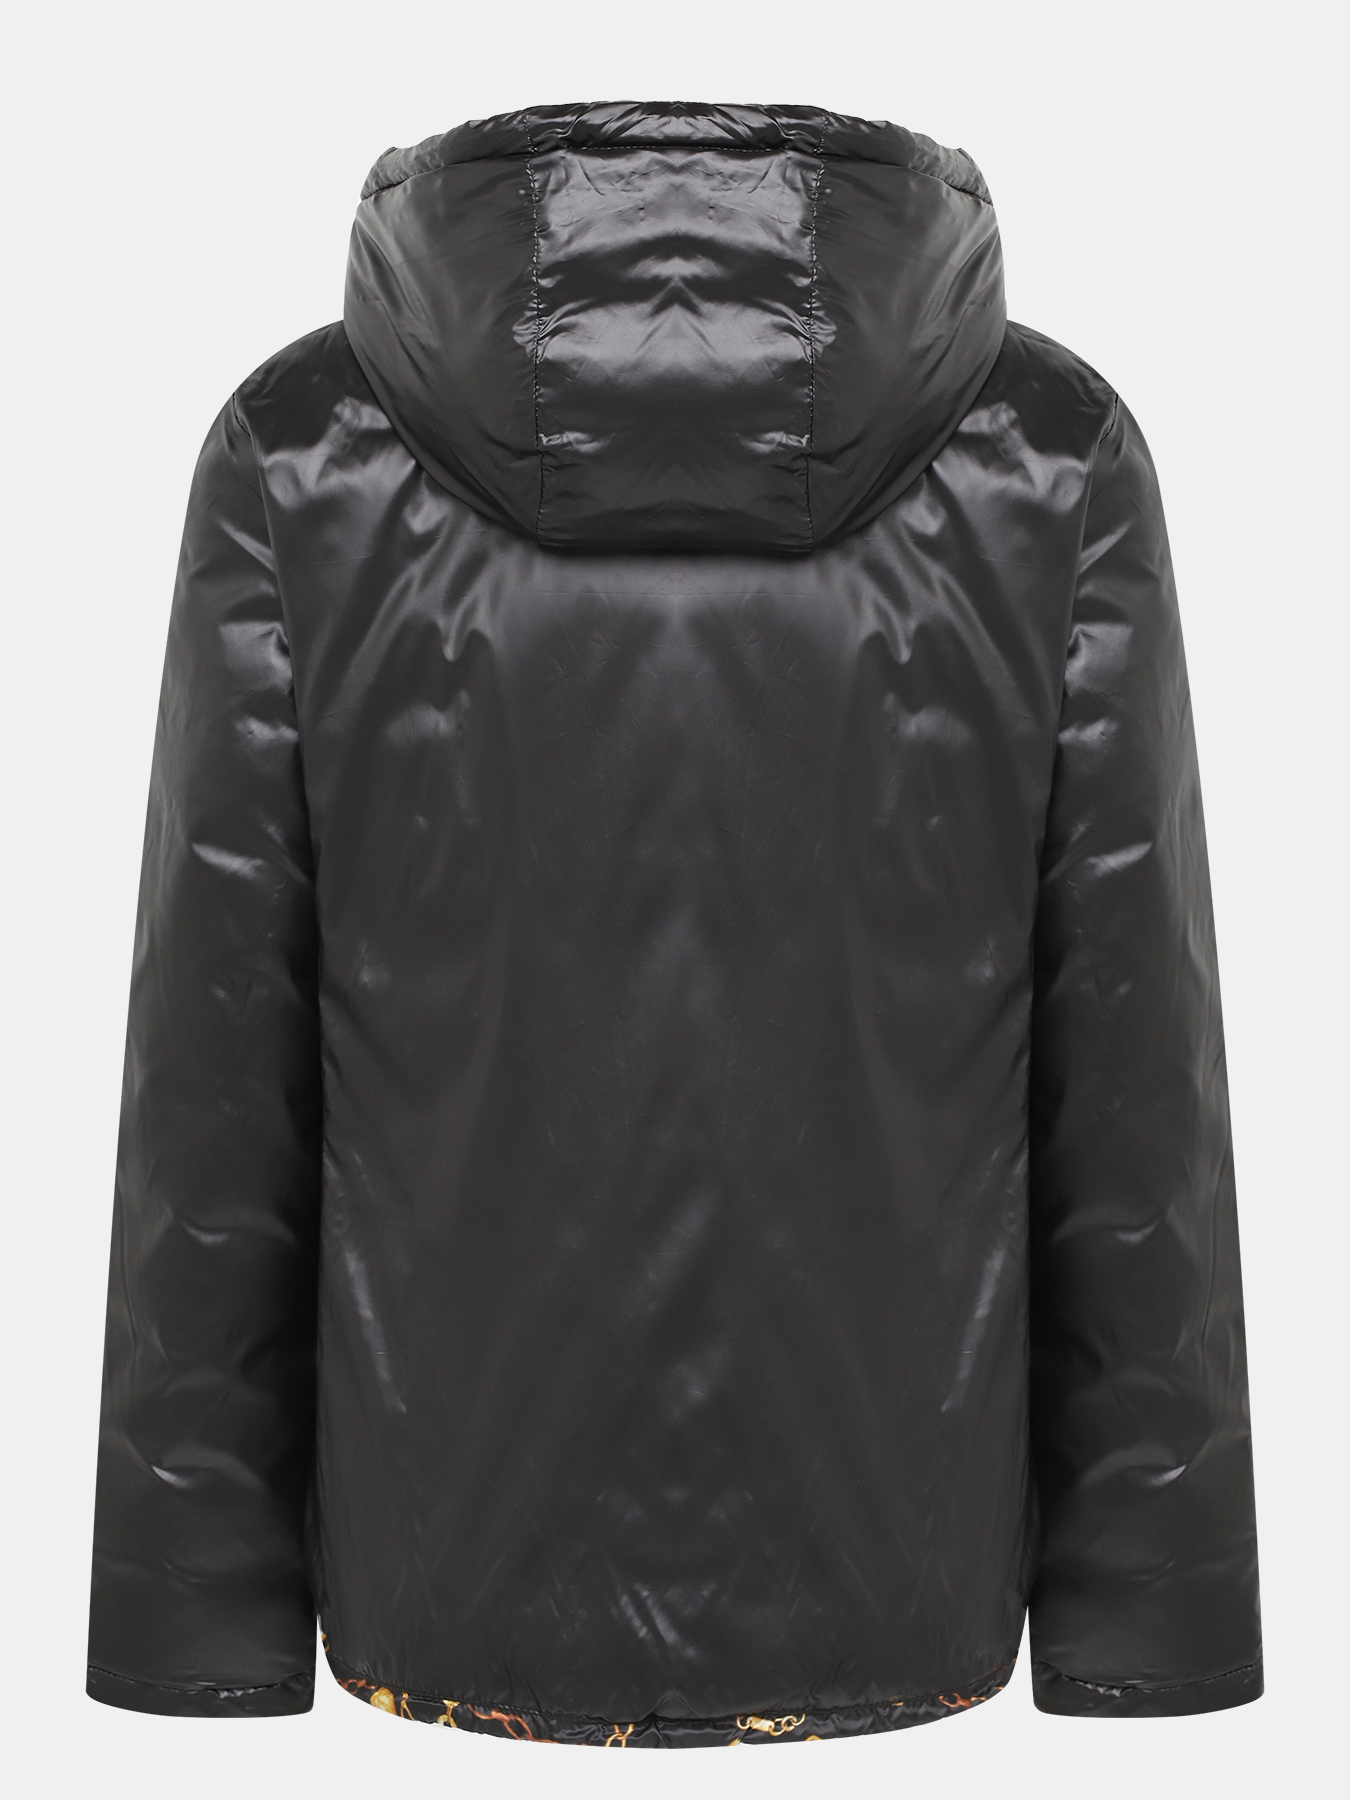 Двусторонняя куртка Alessandro Manzoni Purpur 405288-009, цвет мультиколор, размер 56-58 - фото 9